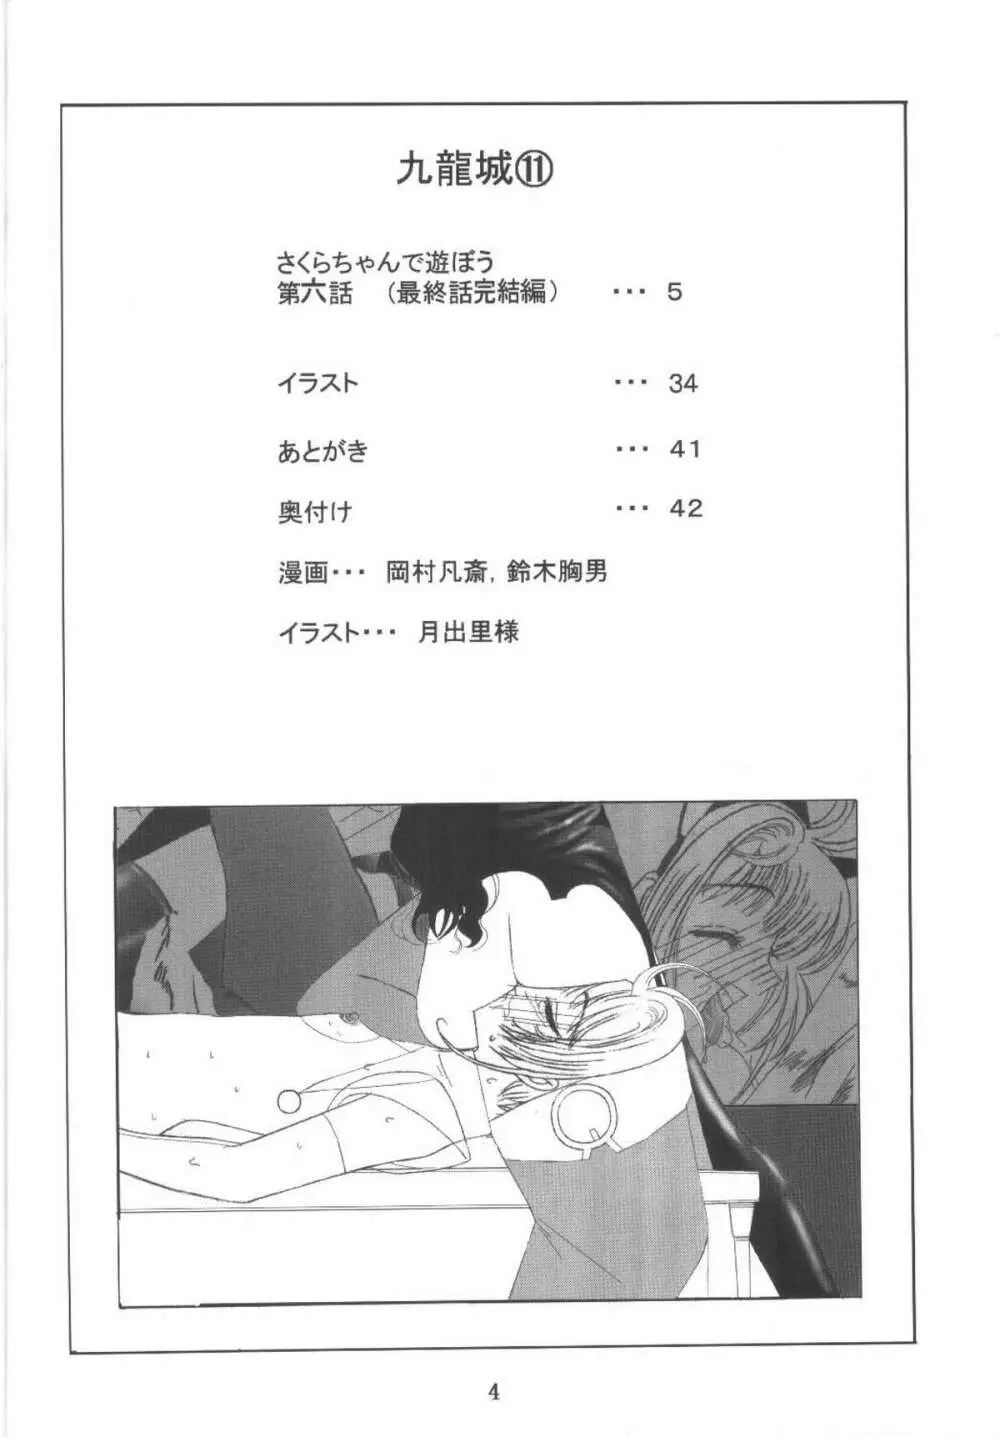 九龍城11 さくらちゃんで遊ぼう6 4ページ